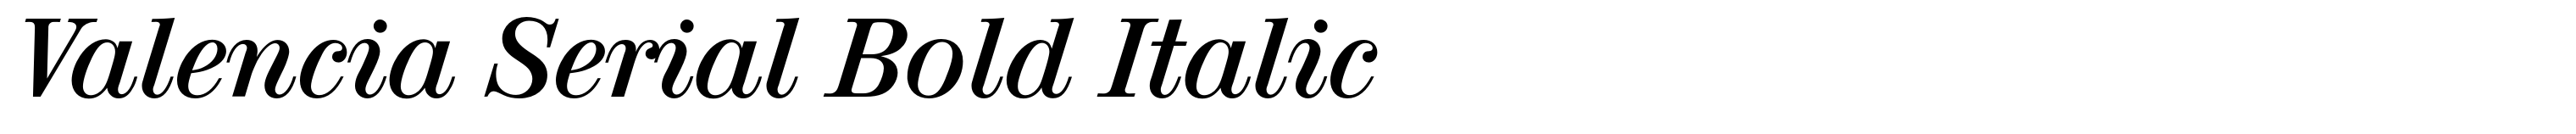 Valencia Serial Bold Italic